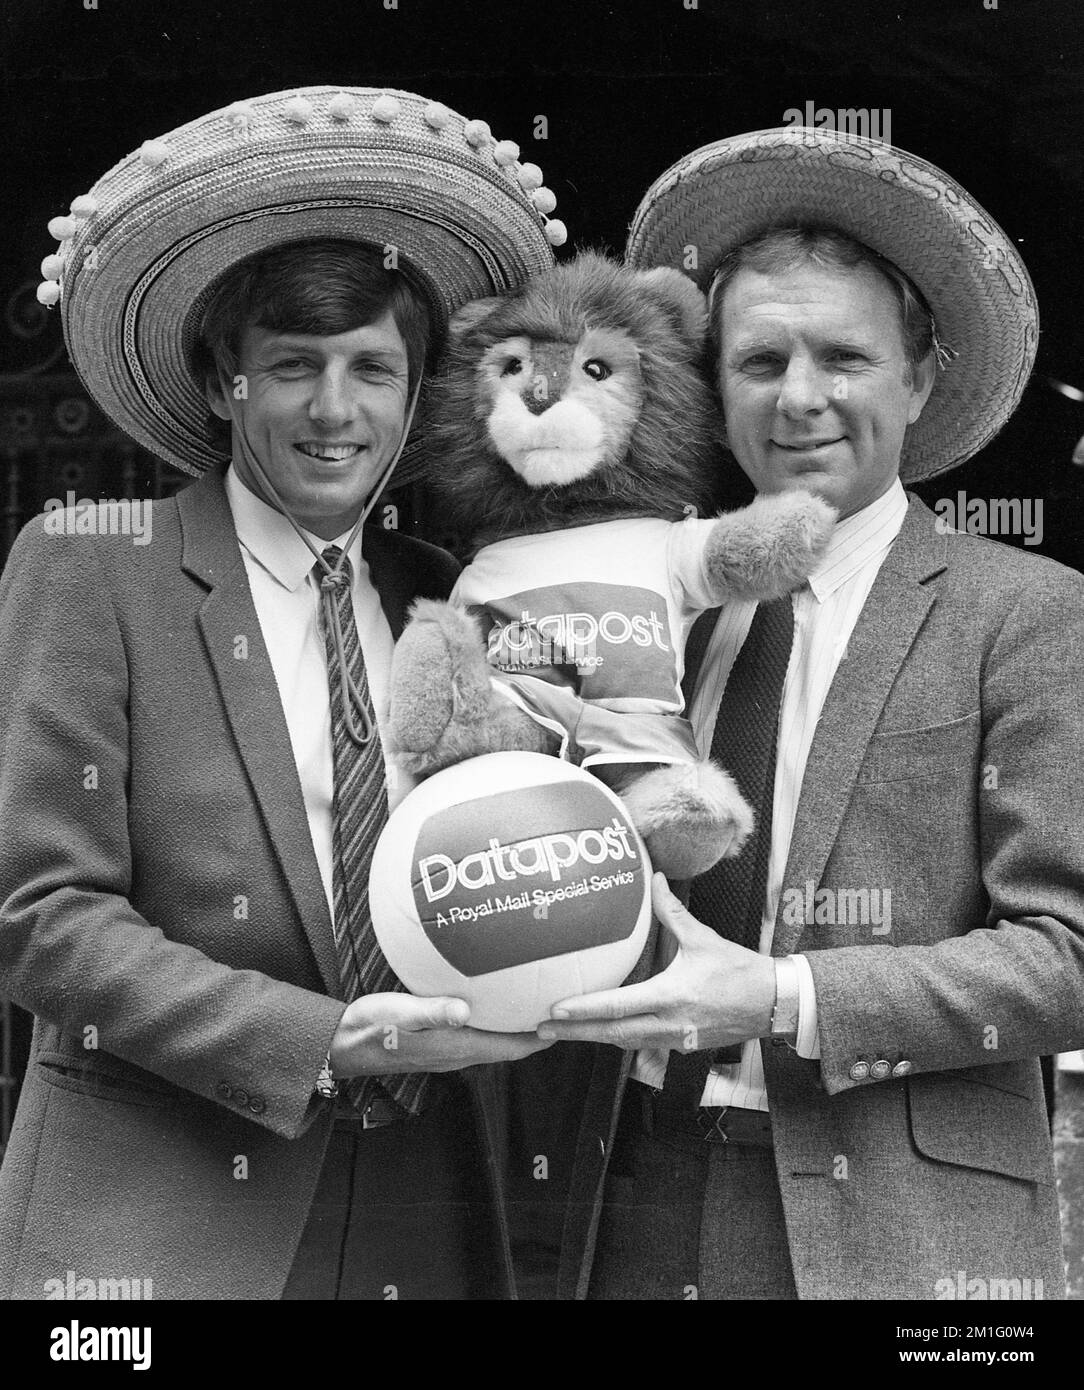 Martin Peters et Bobby Moore, vainqueurs de la coupe du monde de football d'Angleterre, et Willie, la mascotte Englands 1982 Banque D'Images